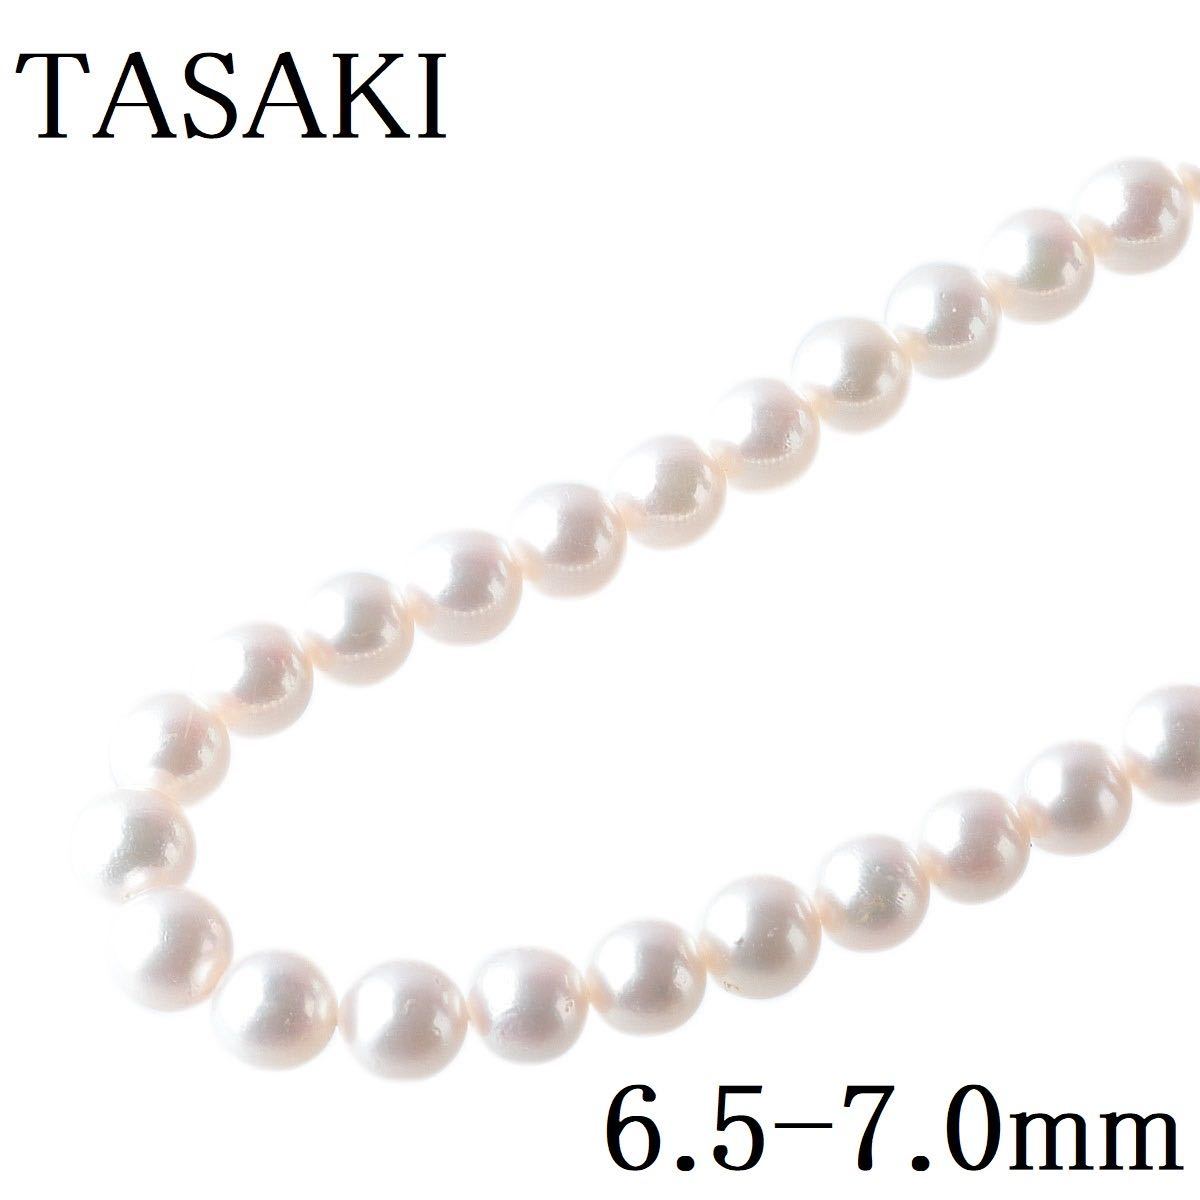 カテゴリー TASAKI SV yZE7r-m66379267735 アコヤ真珠ネックレス までの